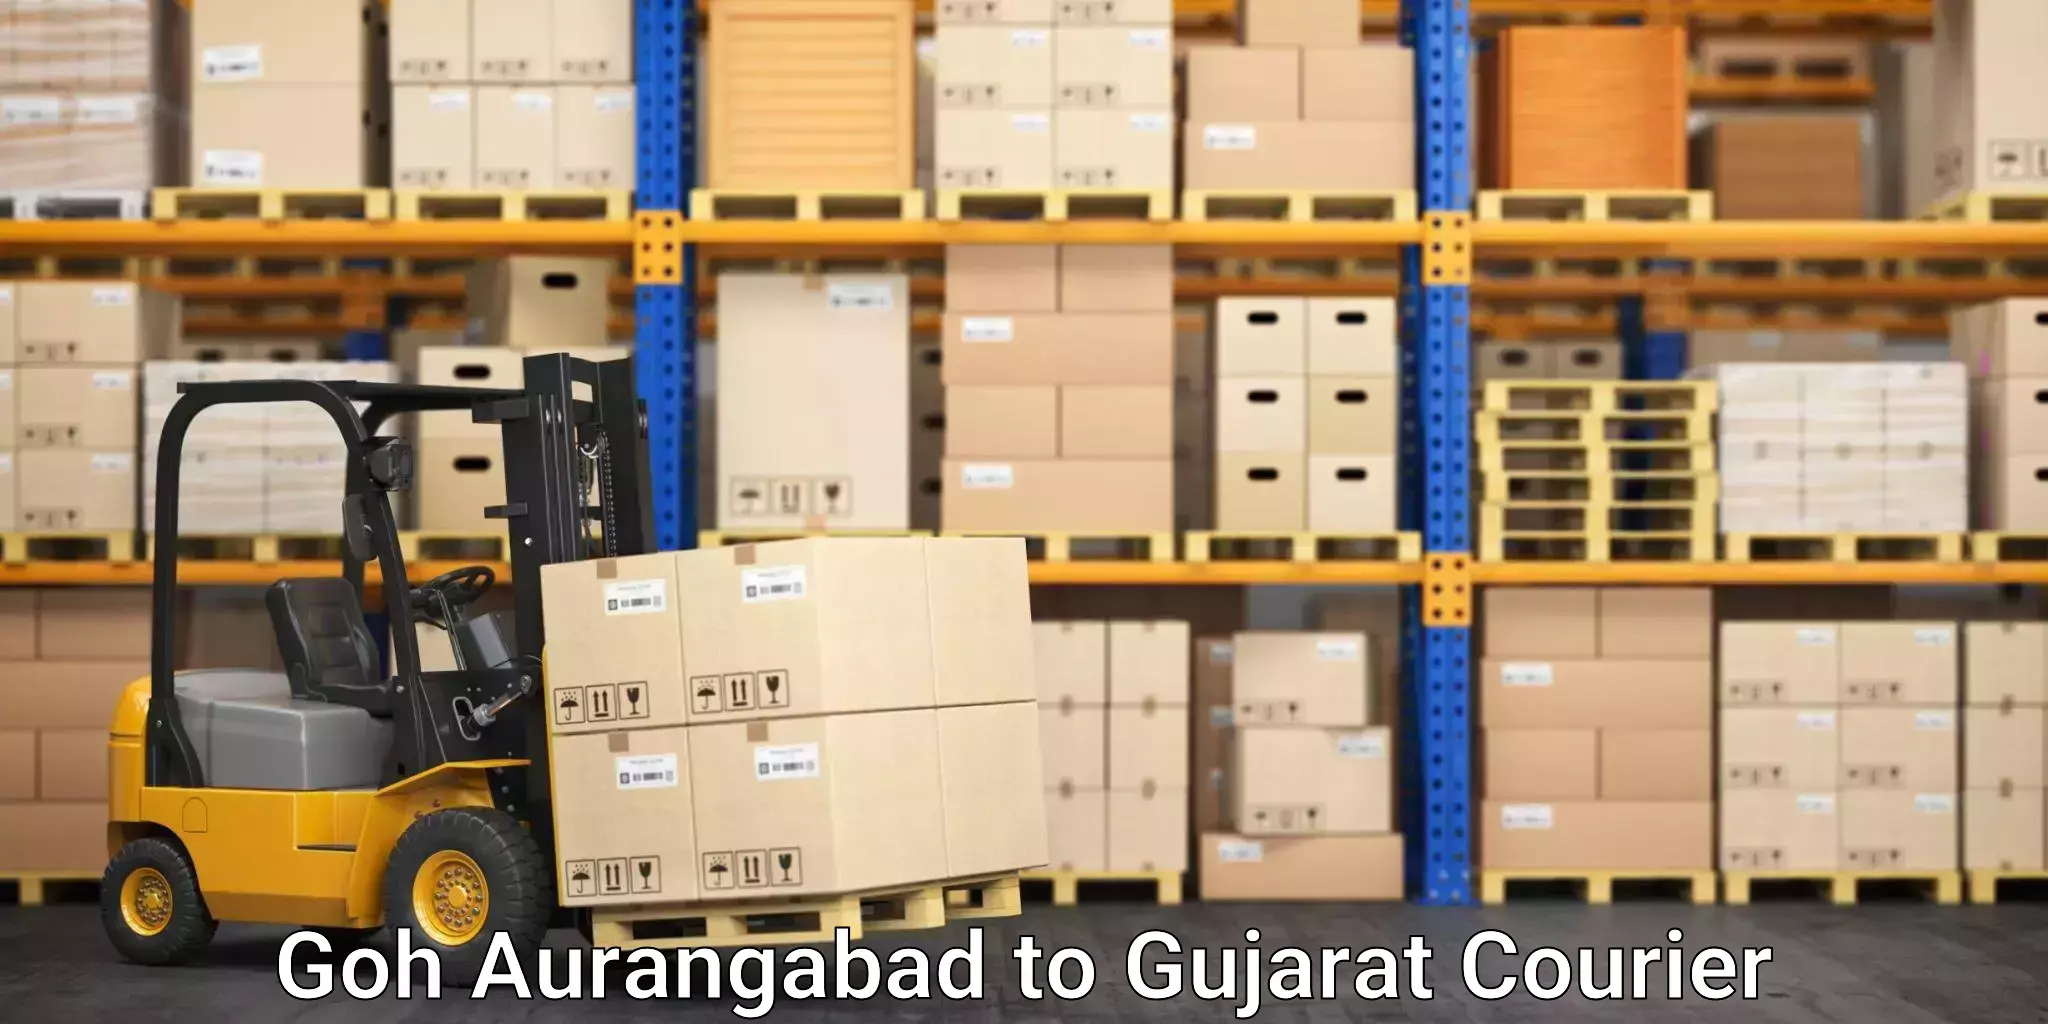 Professional moving company Goh Aurangabad to Bhachau